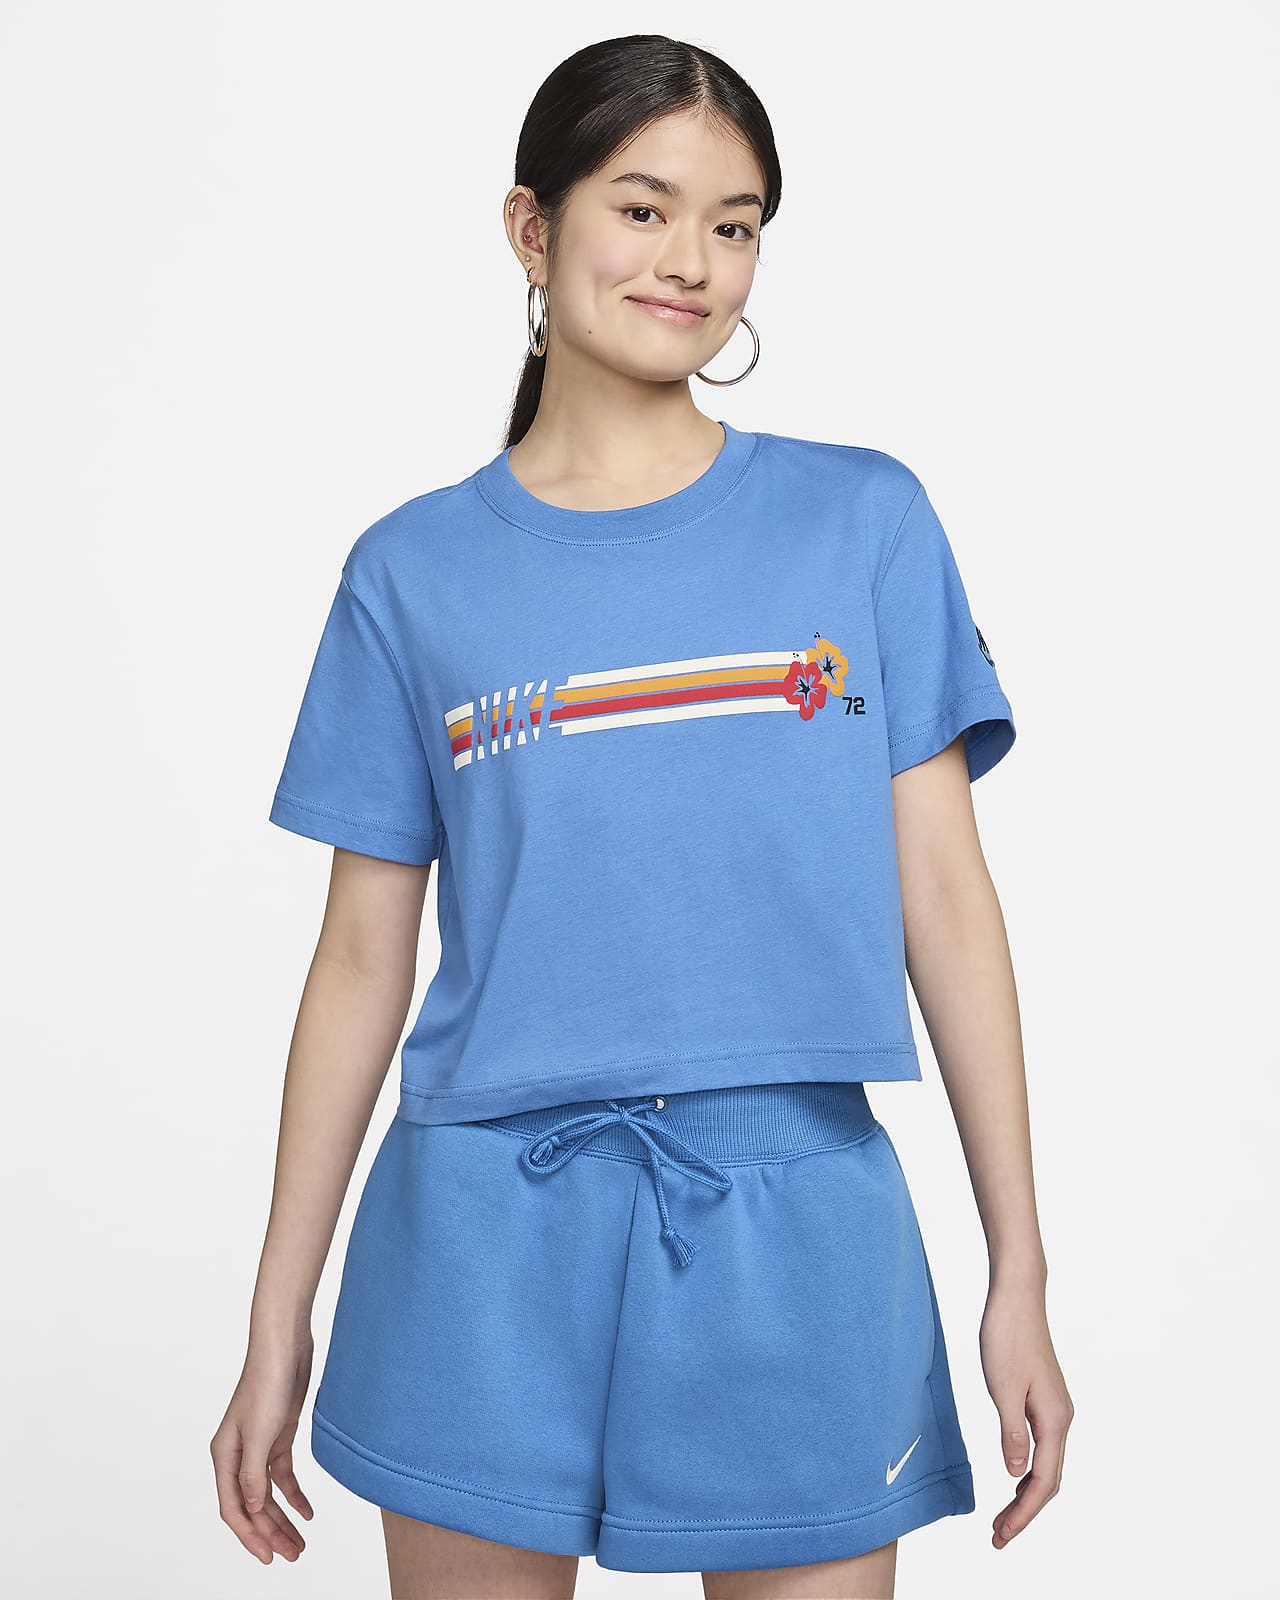 나이키 스포츠웨어 여성 크롭 티셔츠